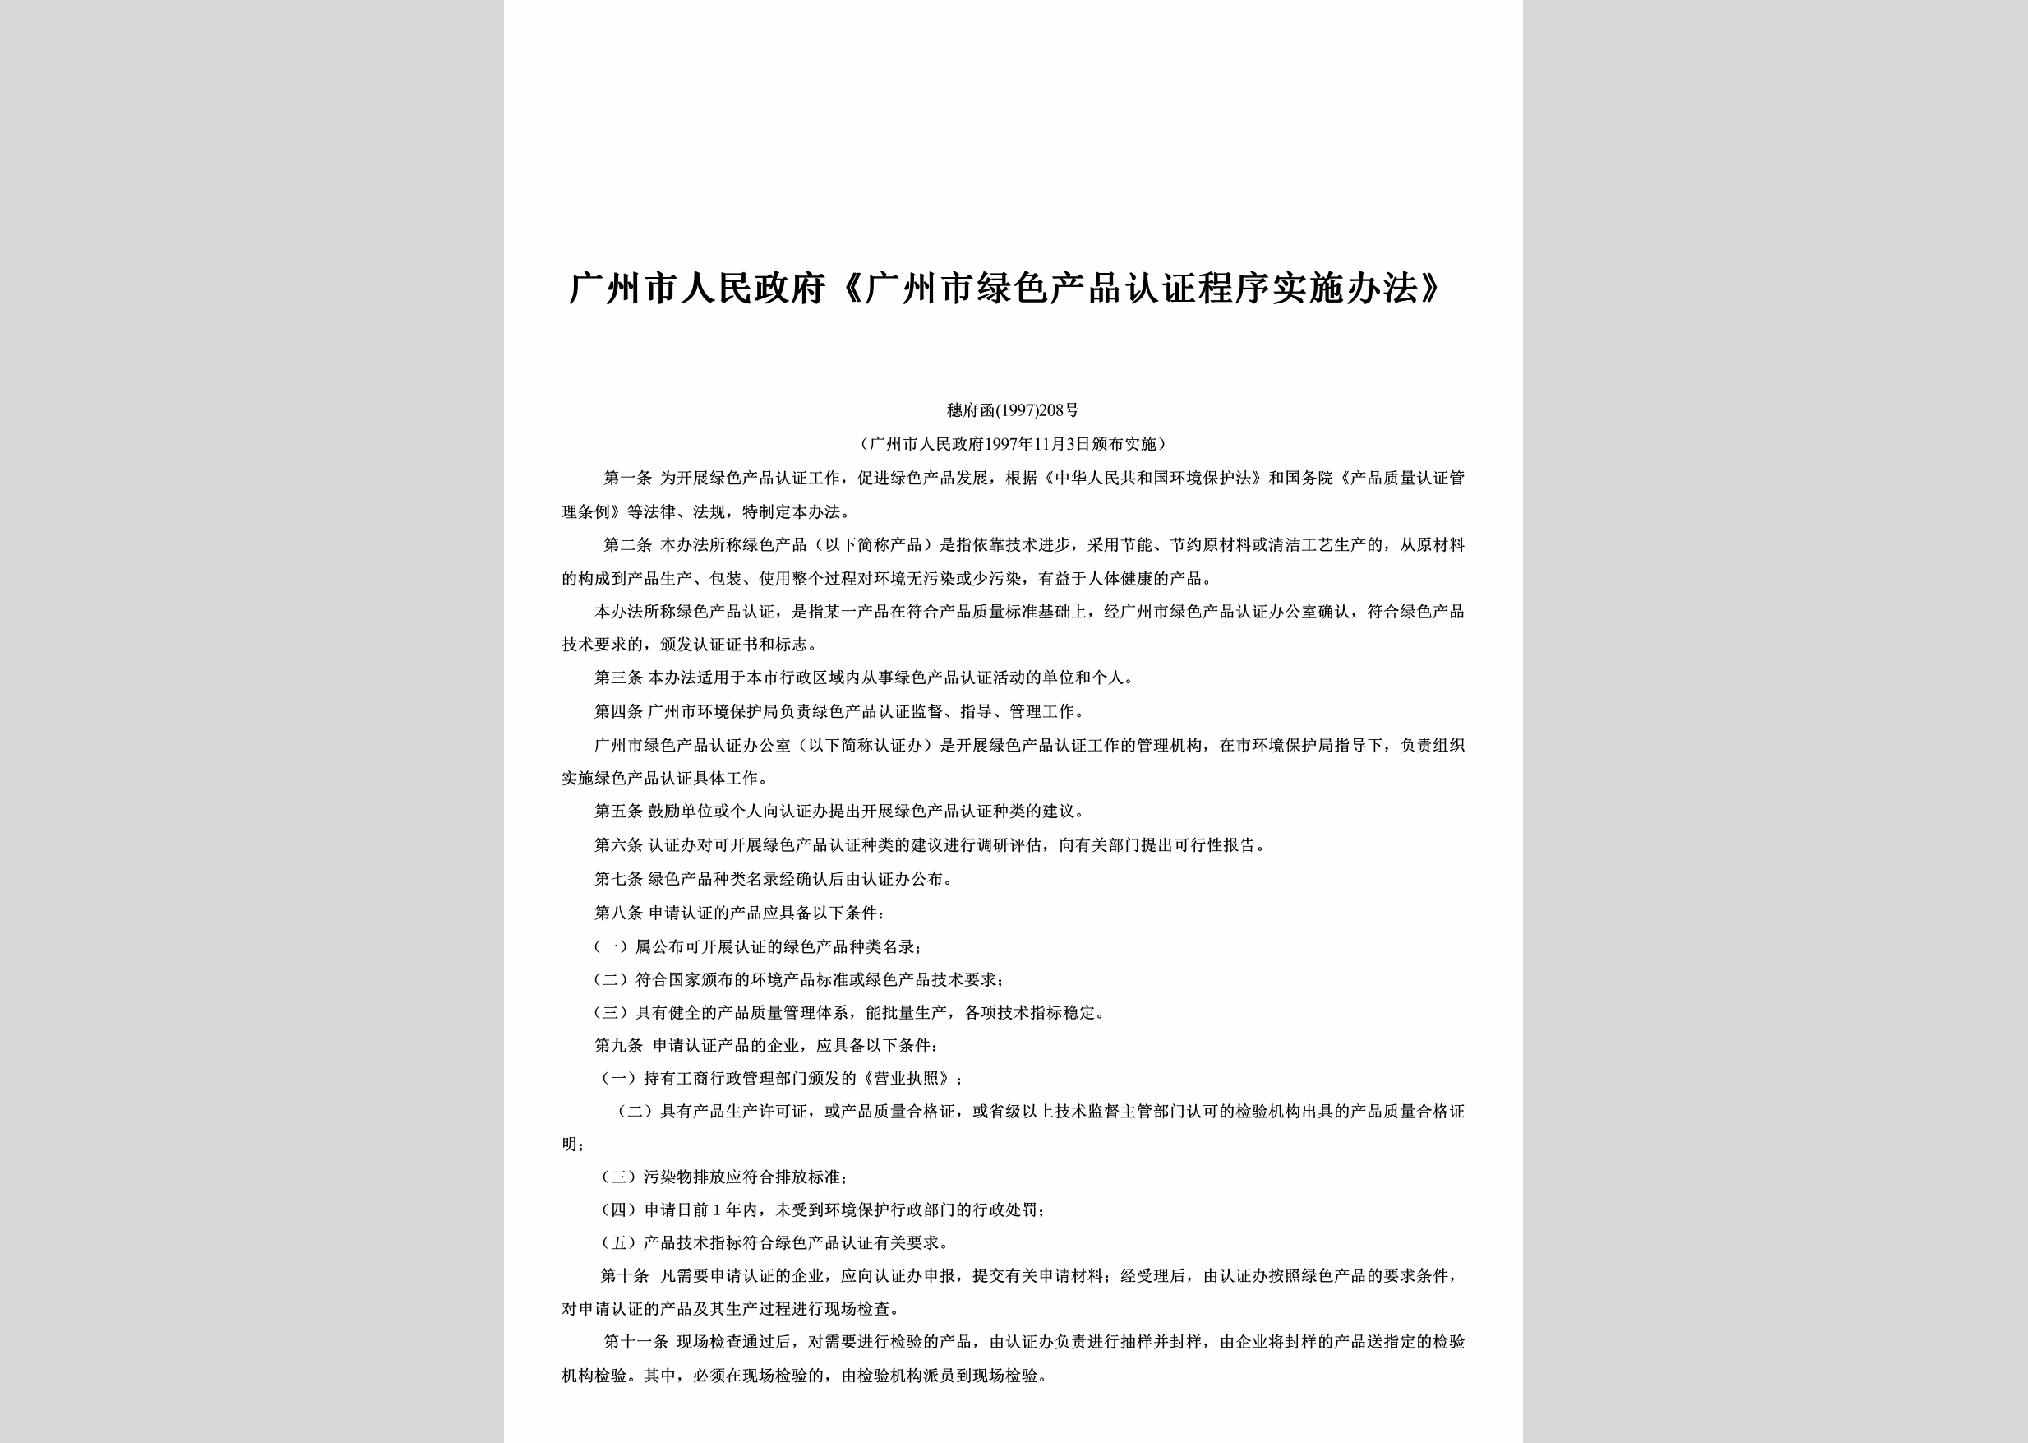 穗府函[1997]208号：《广州市绿色产品认证程序实施办法》